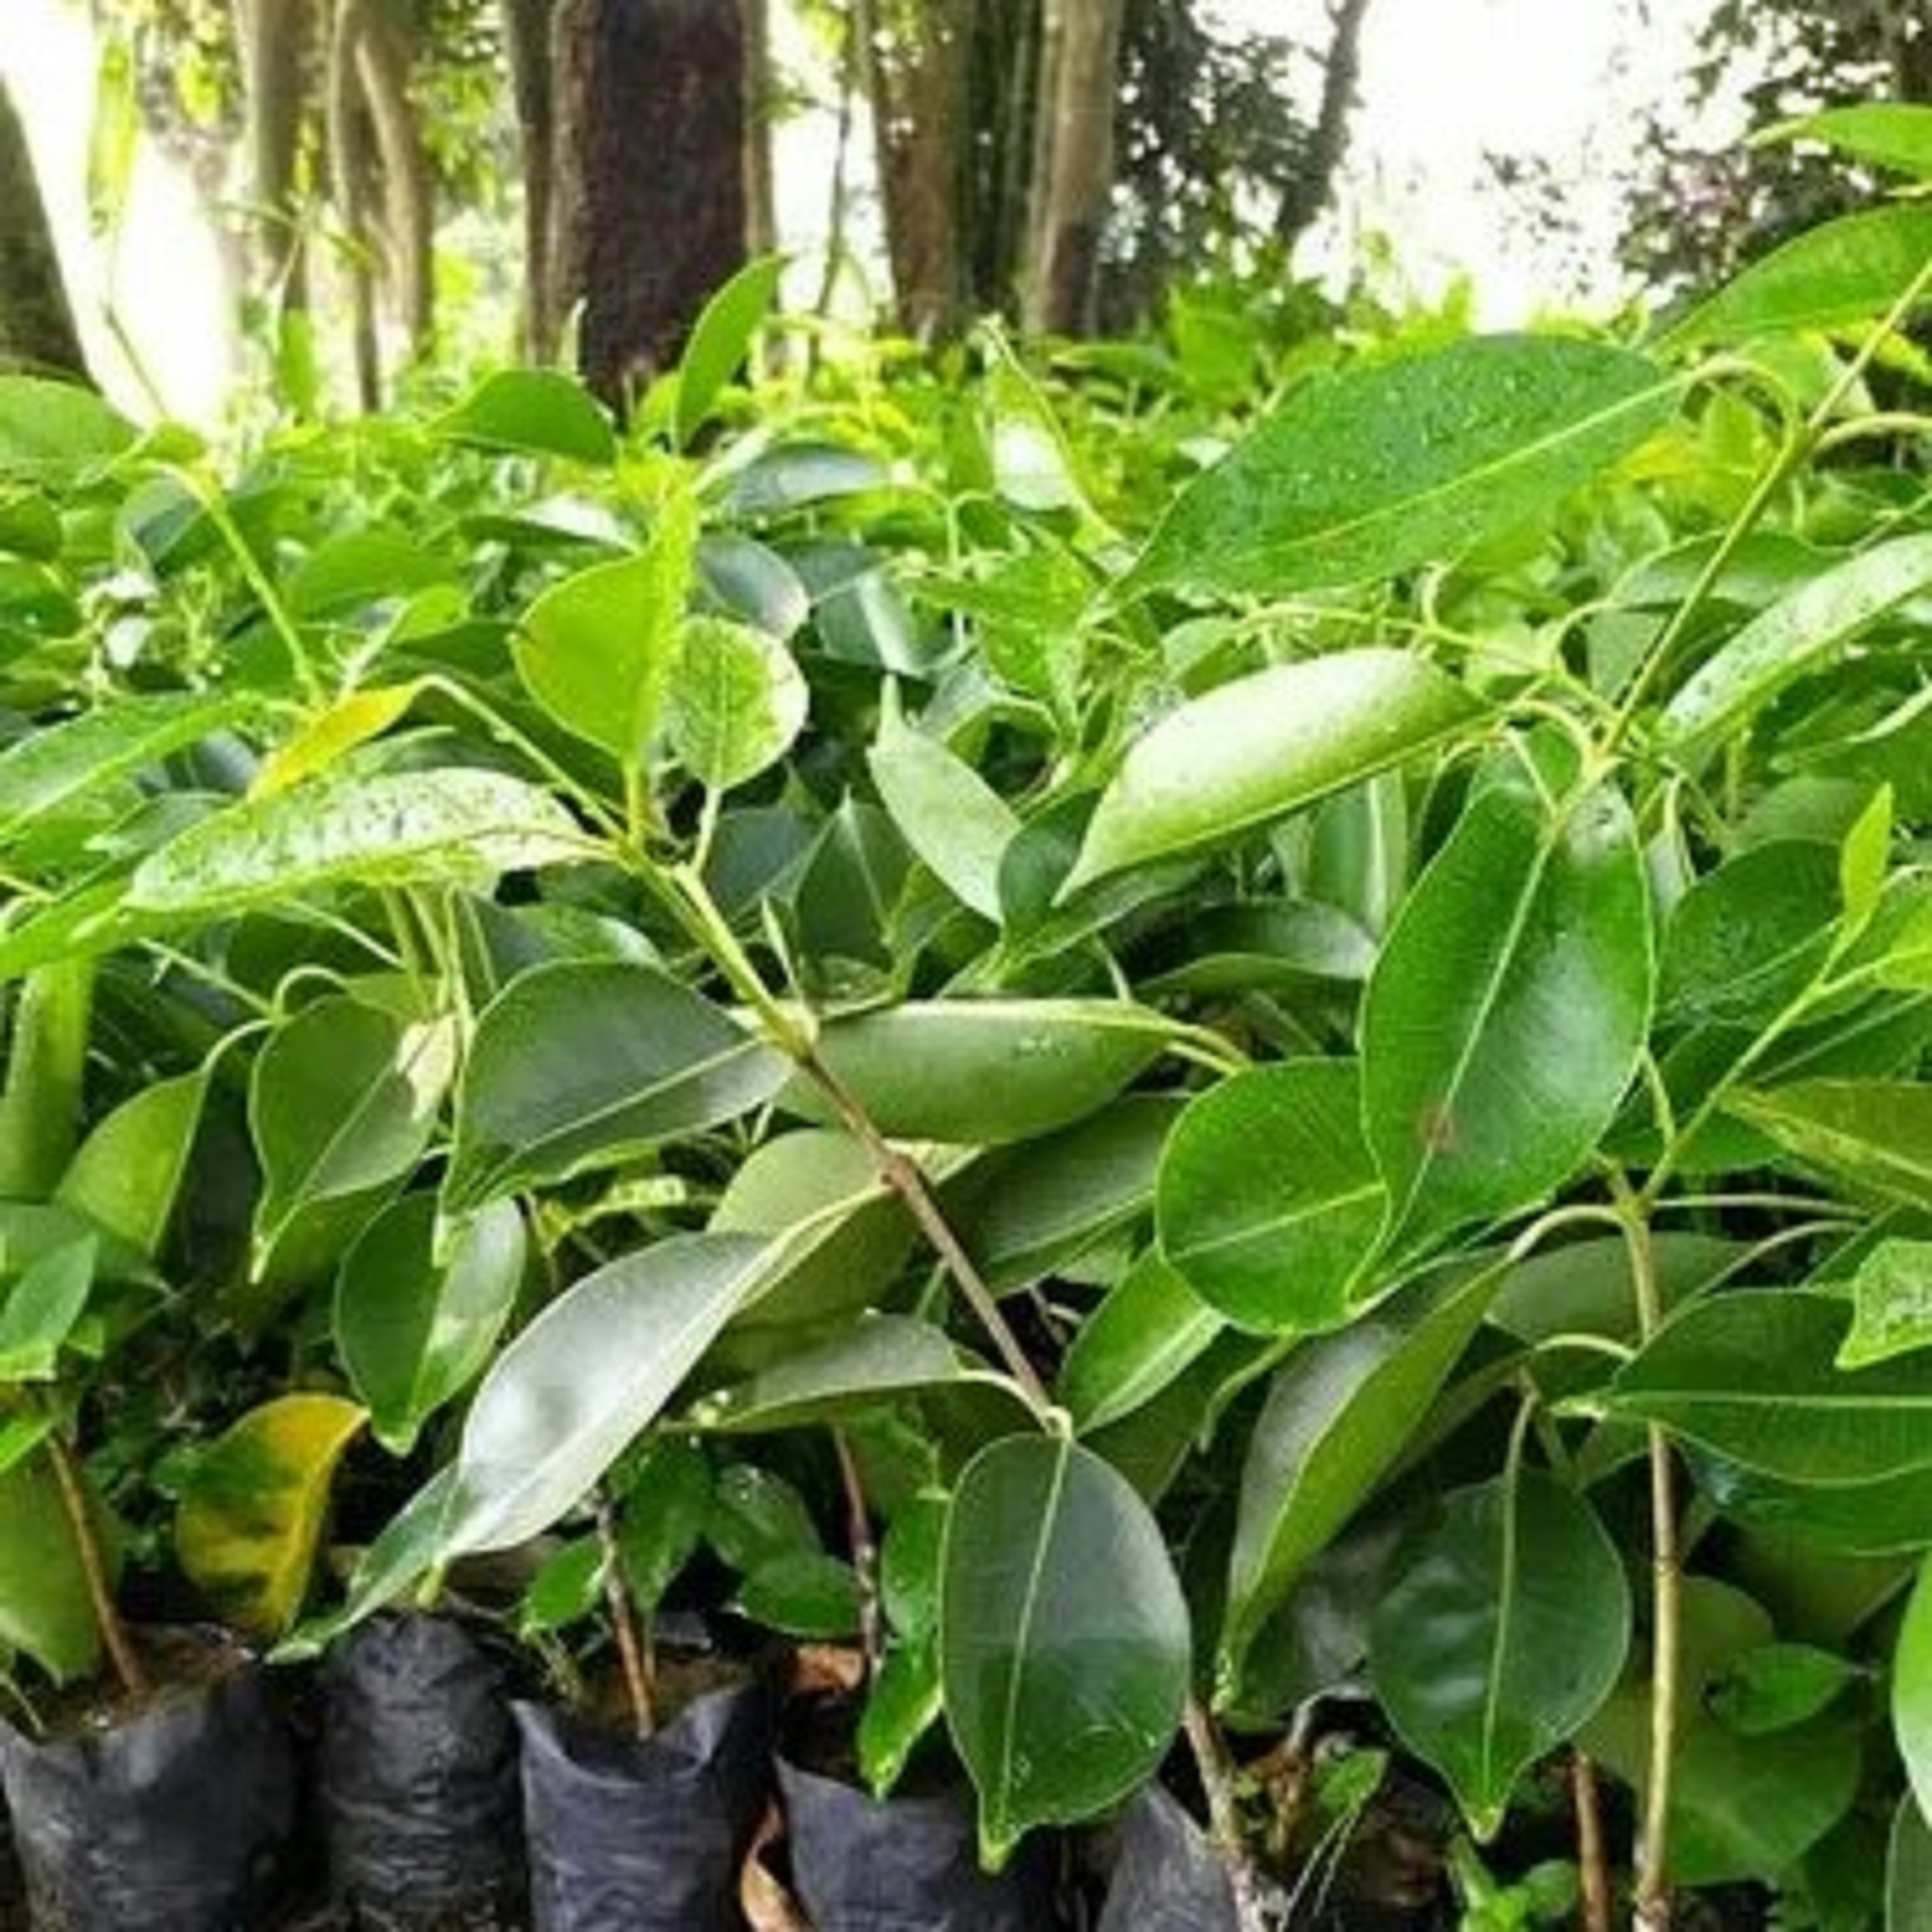 Jambolan Plant (Jamun)